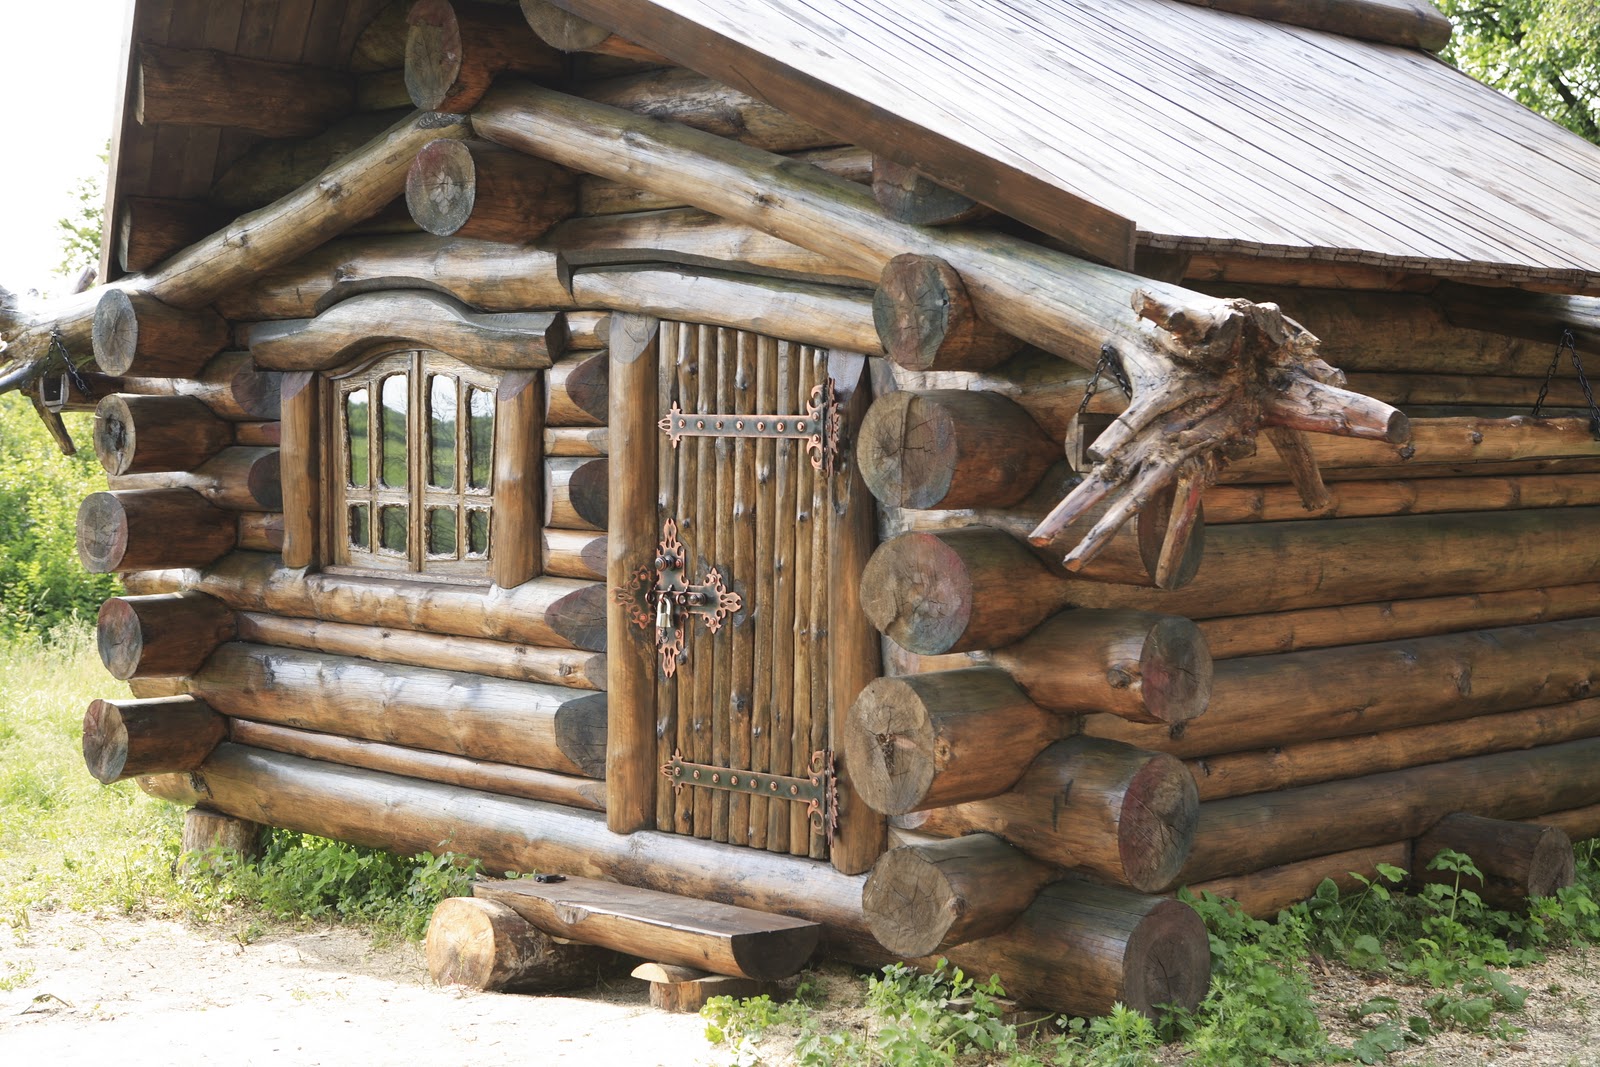                                                  Kuća od brvana u Krimu